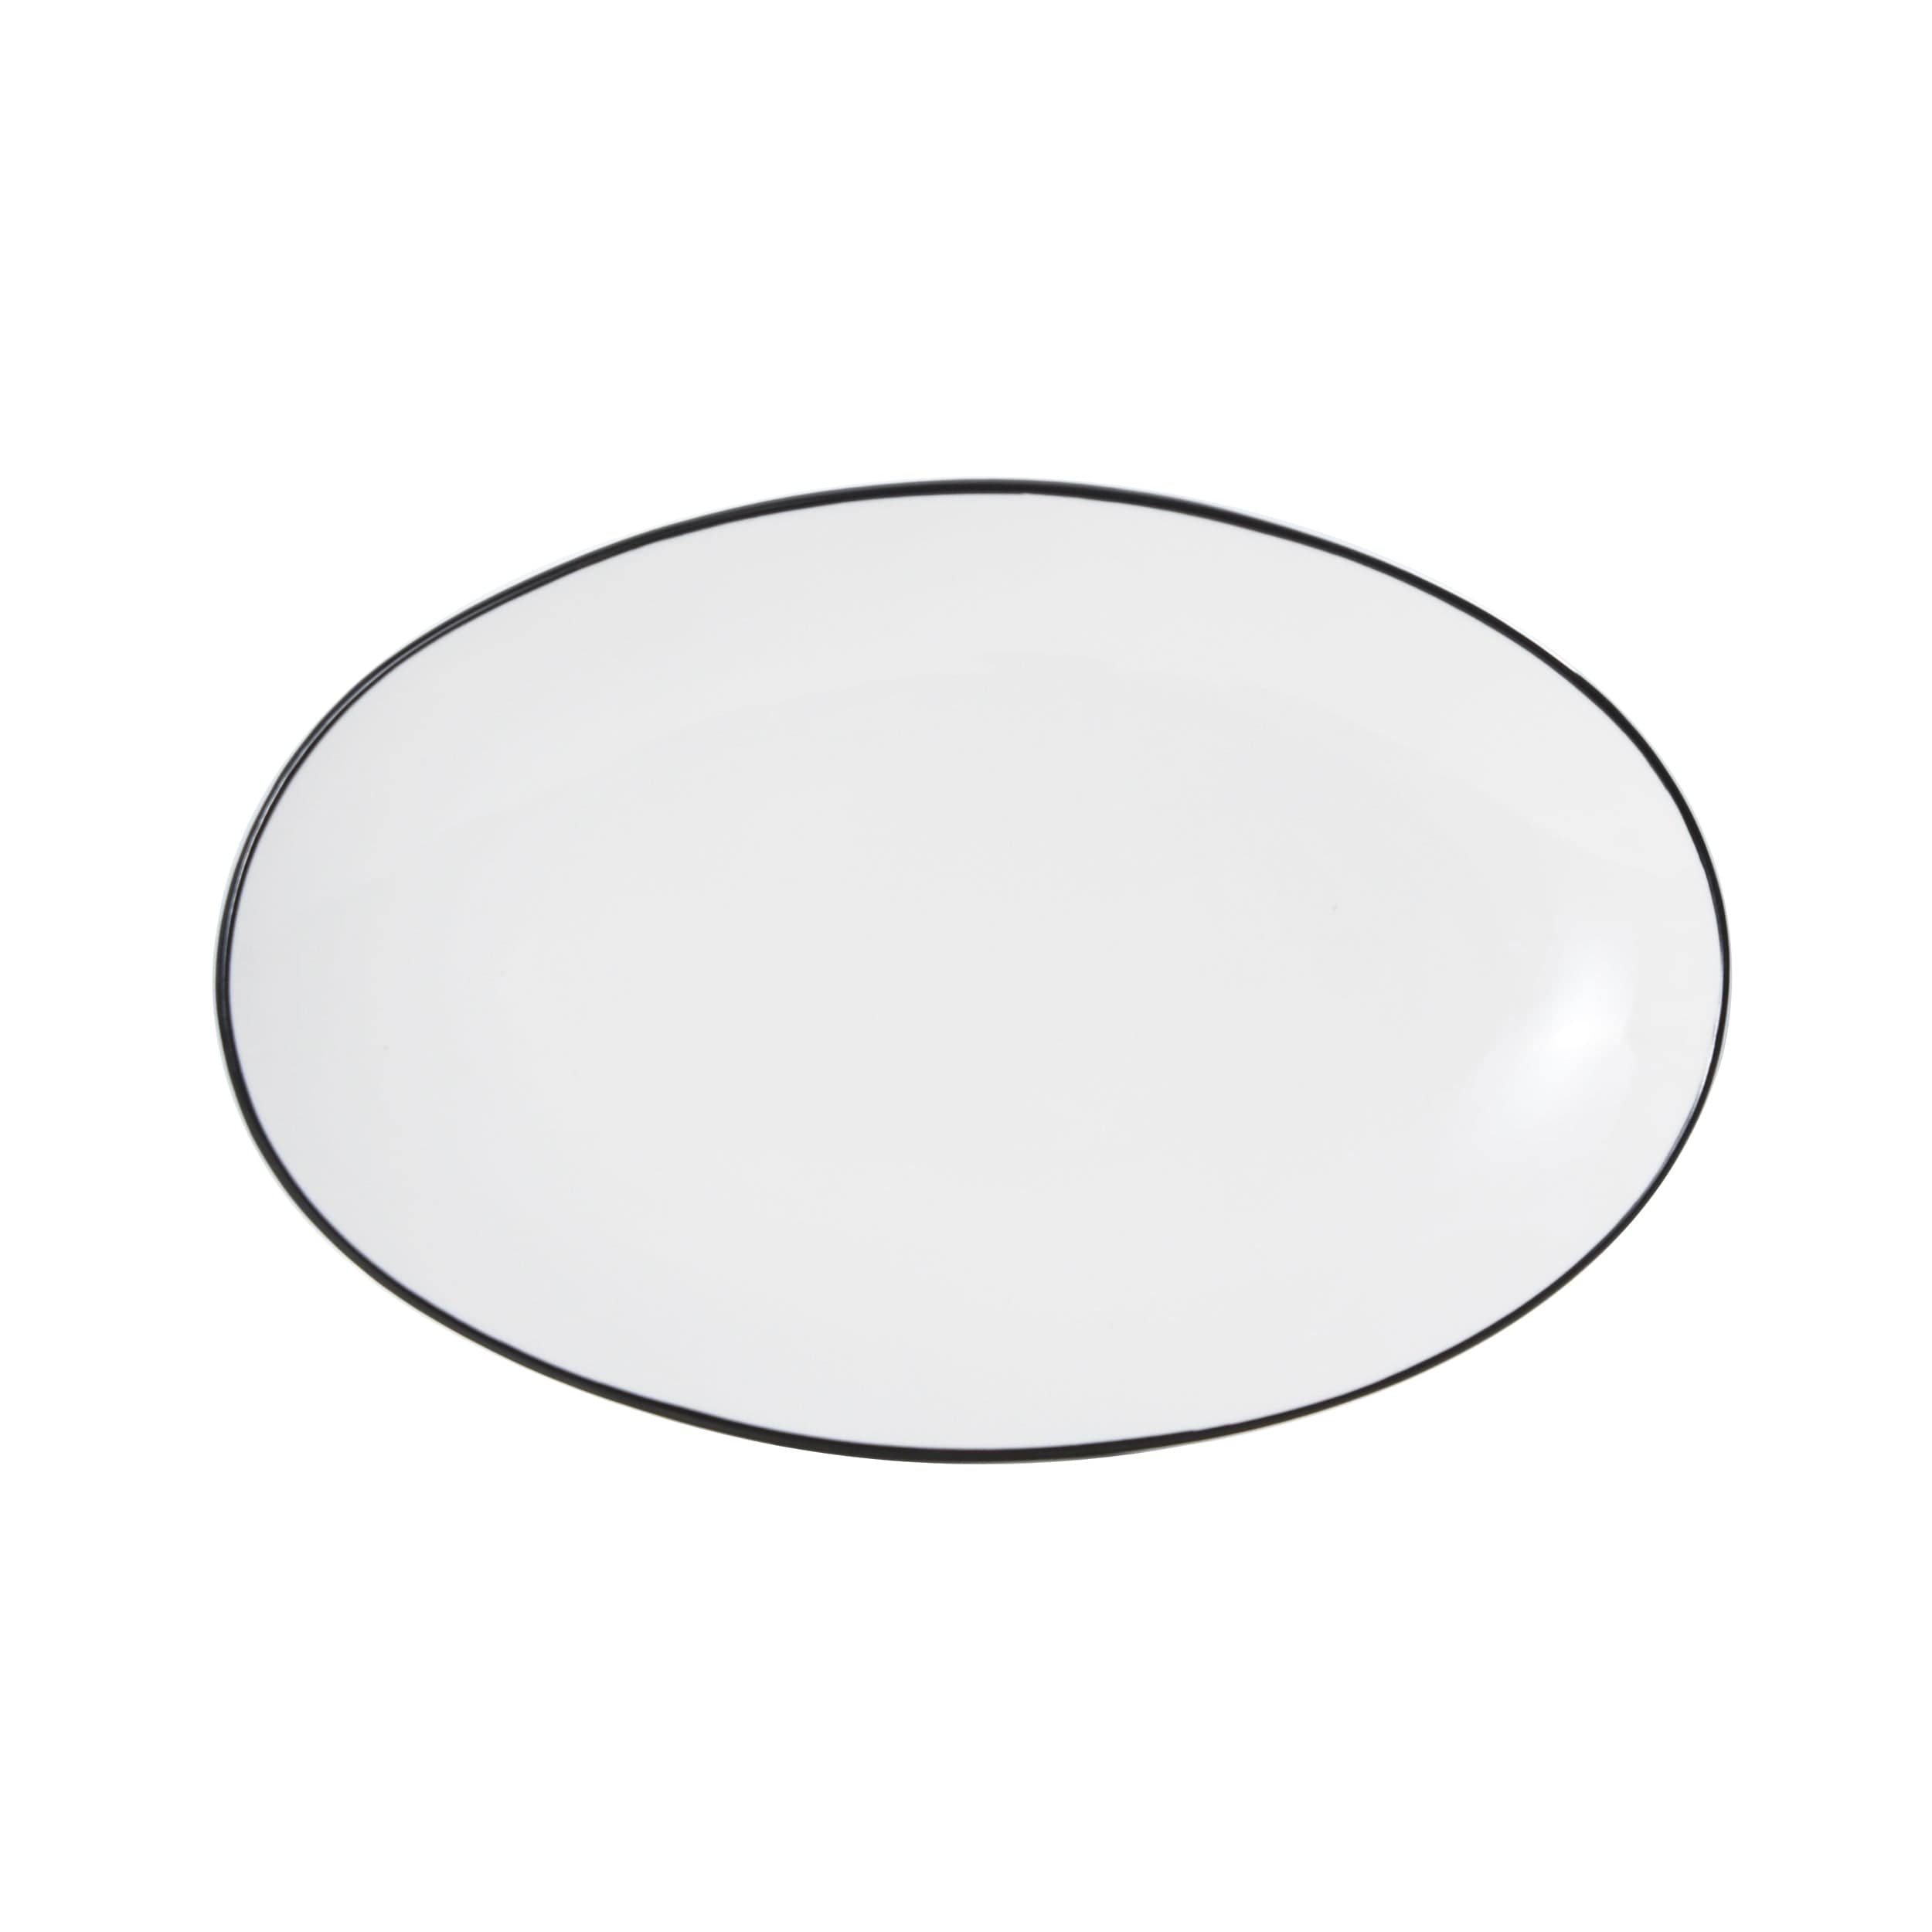 Bistro Pinstripe Porcelain Oval Platter 13x8" Black Pinstripe #color_black pinstripe